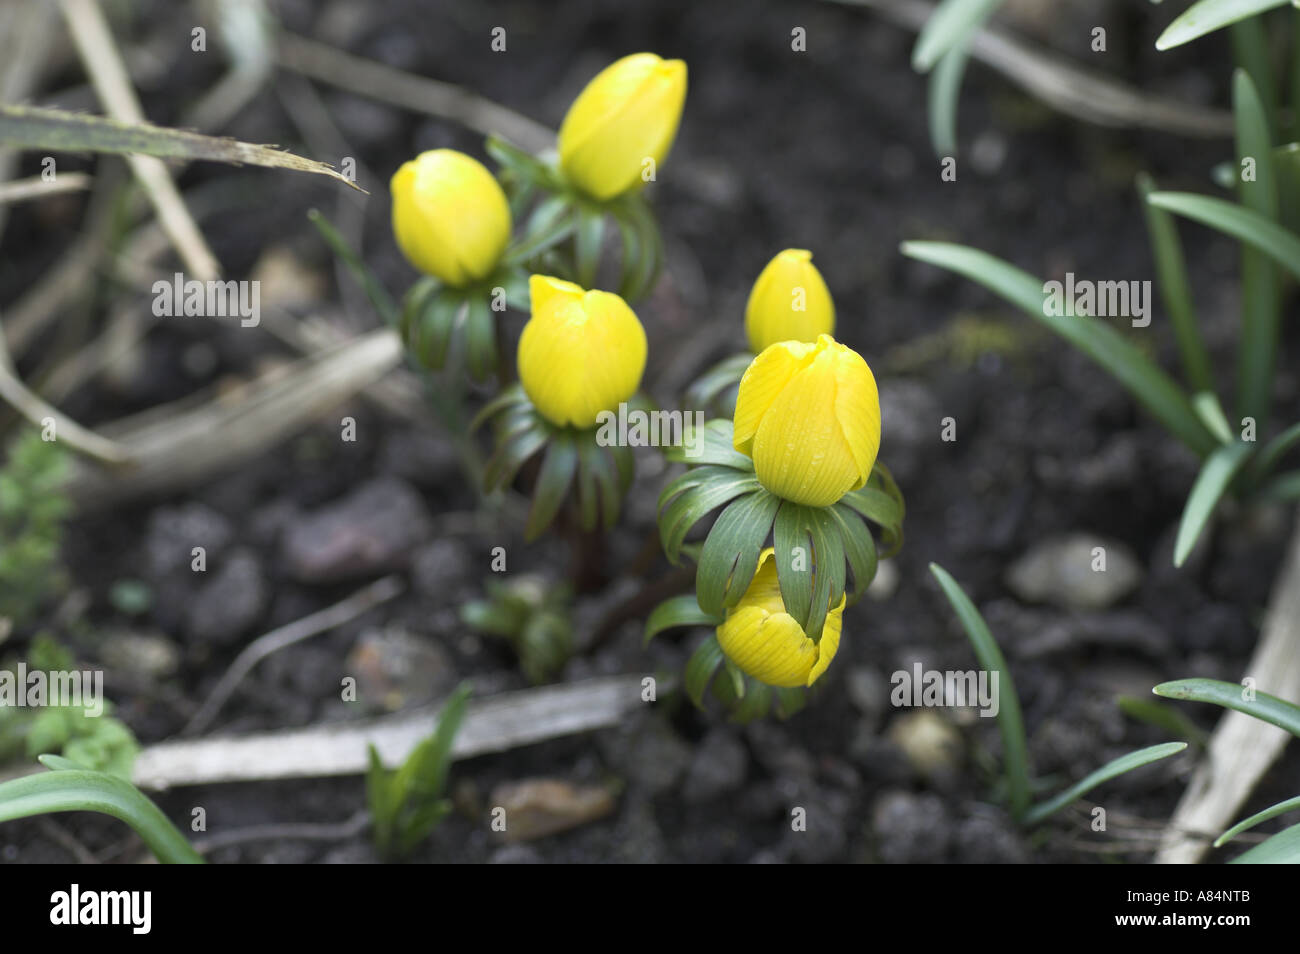 Late flowering eranthus cilicica aconite Stock Photo